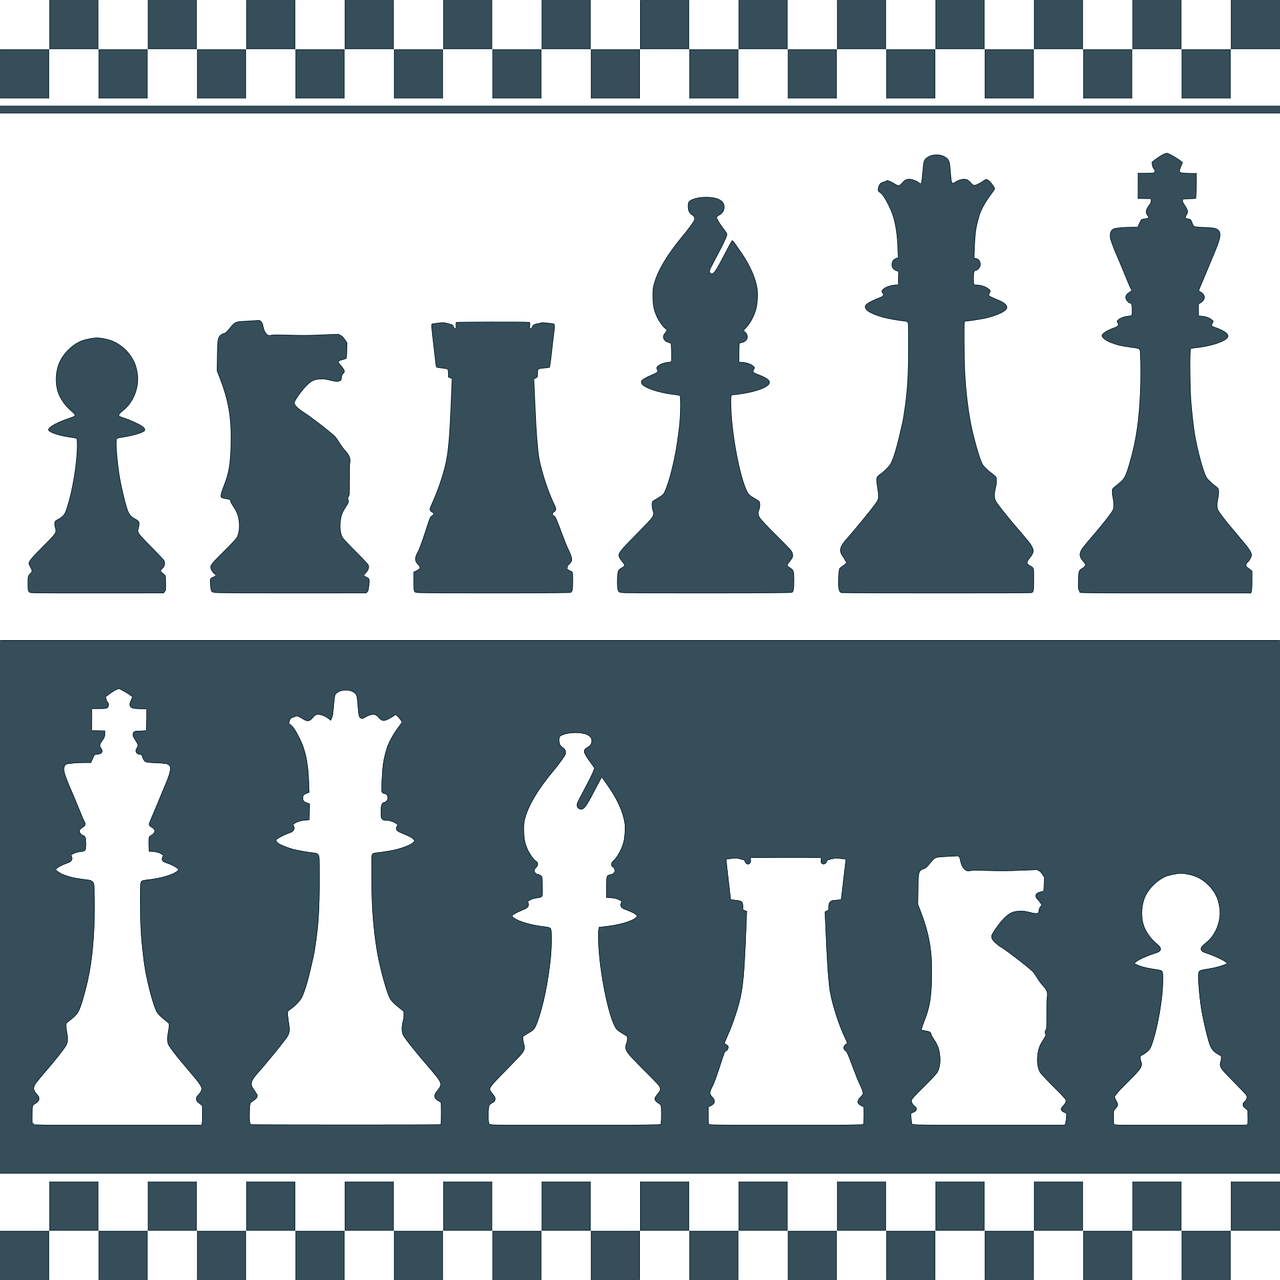 Попробуйте использовать разные материалы и техники, чтобы создать уникальный набор шахматных фигур, который будет отличаться от стандартных комплектов.